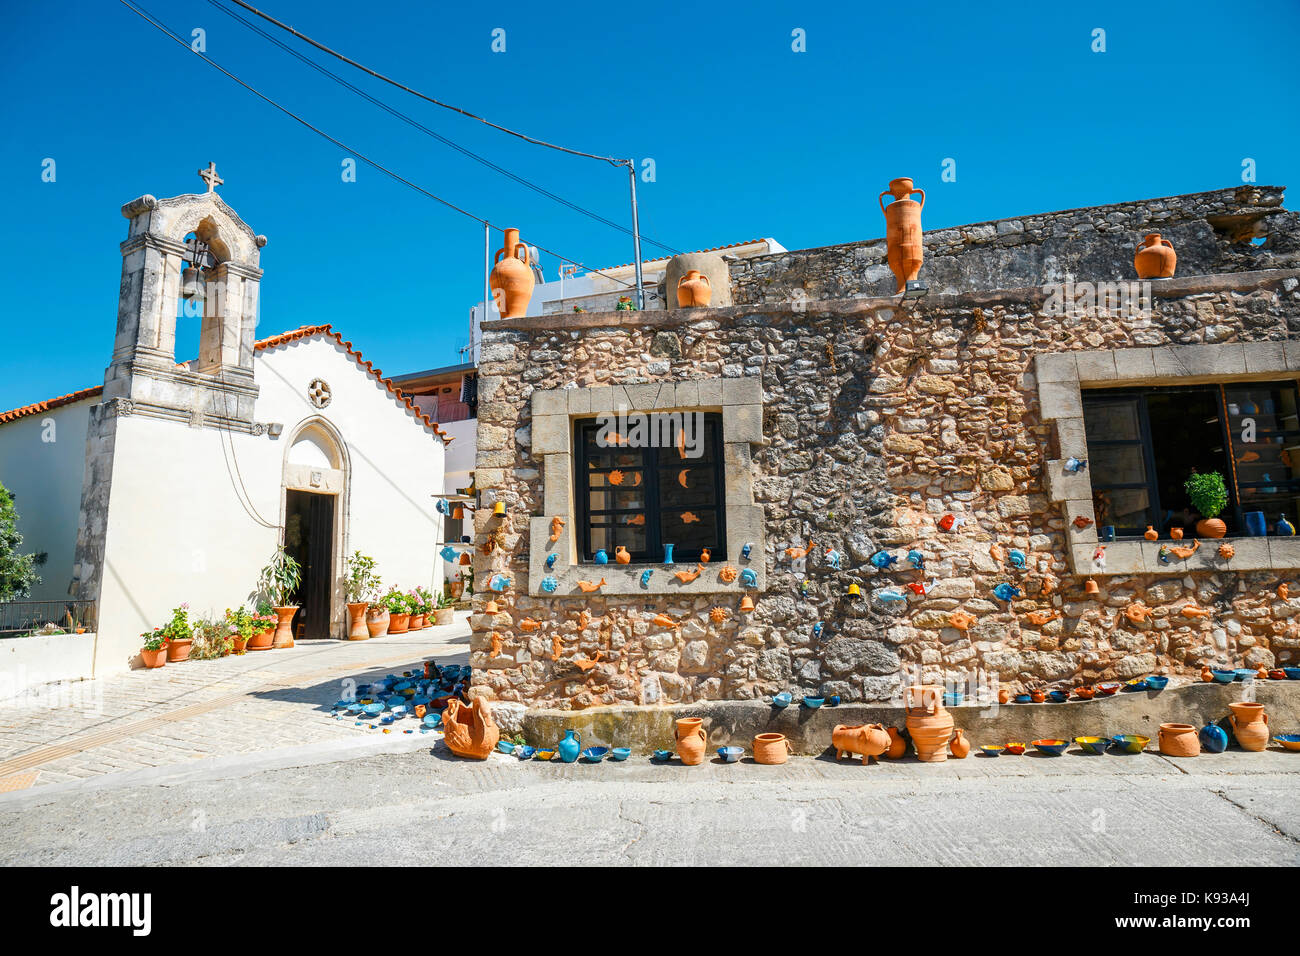 Traditionelle creten Dorf margarites berühmt für handgefertigte Keramik, Kreta, Griechenland Stockfoto